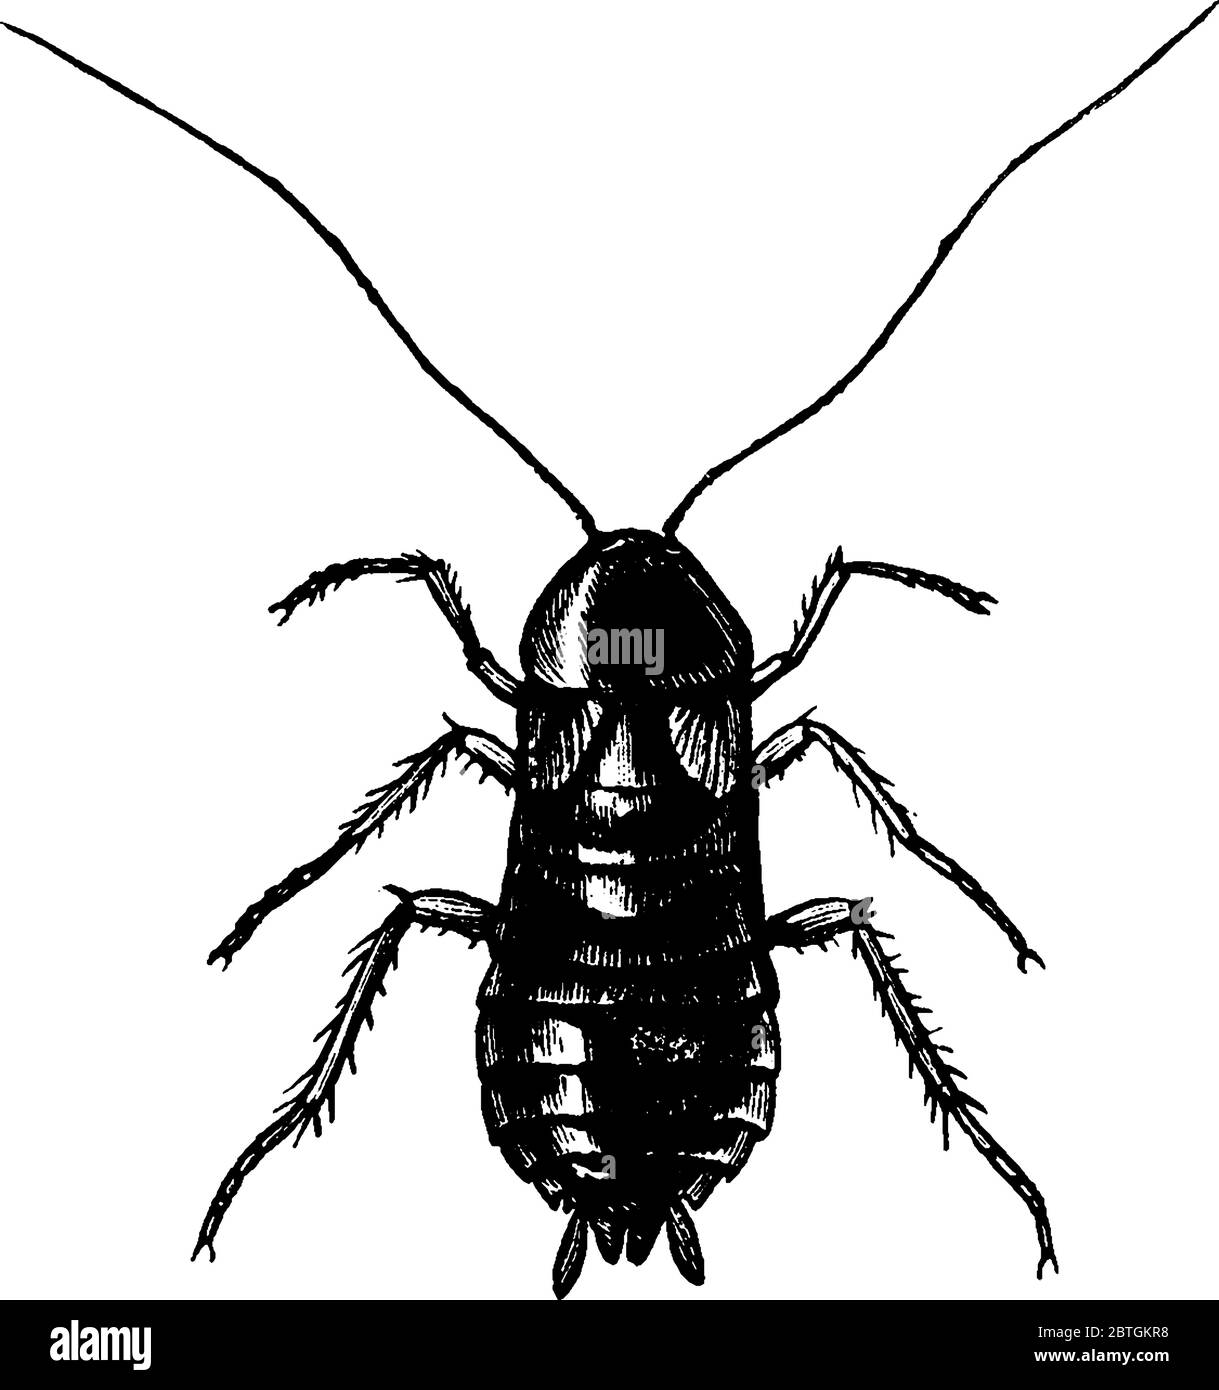 Les cafards sont des insectes de l'ordre de Blatodea, qui comprend également des termites, un dessin de ligne vintage ou une illustration de gravure. Illustration de Vecteur